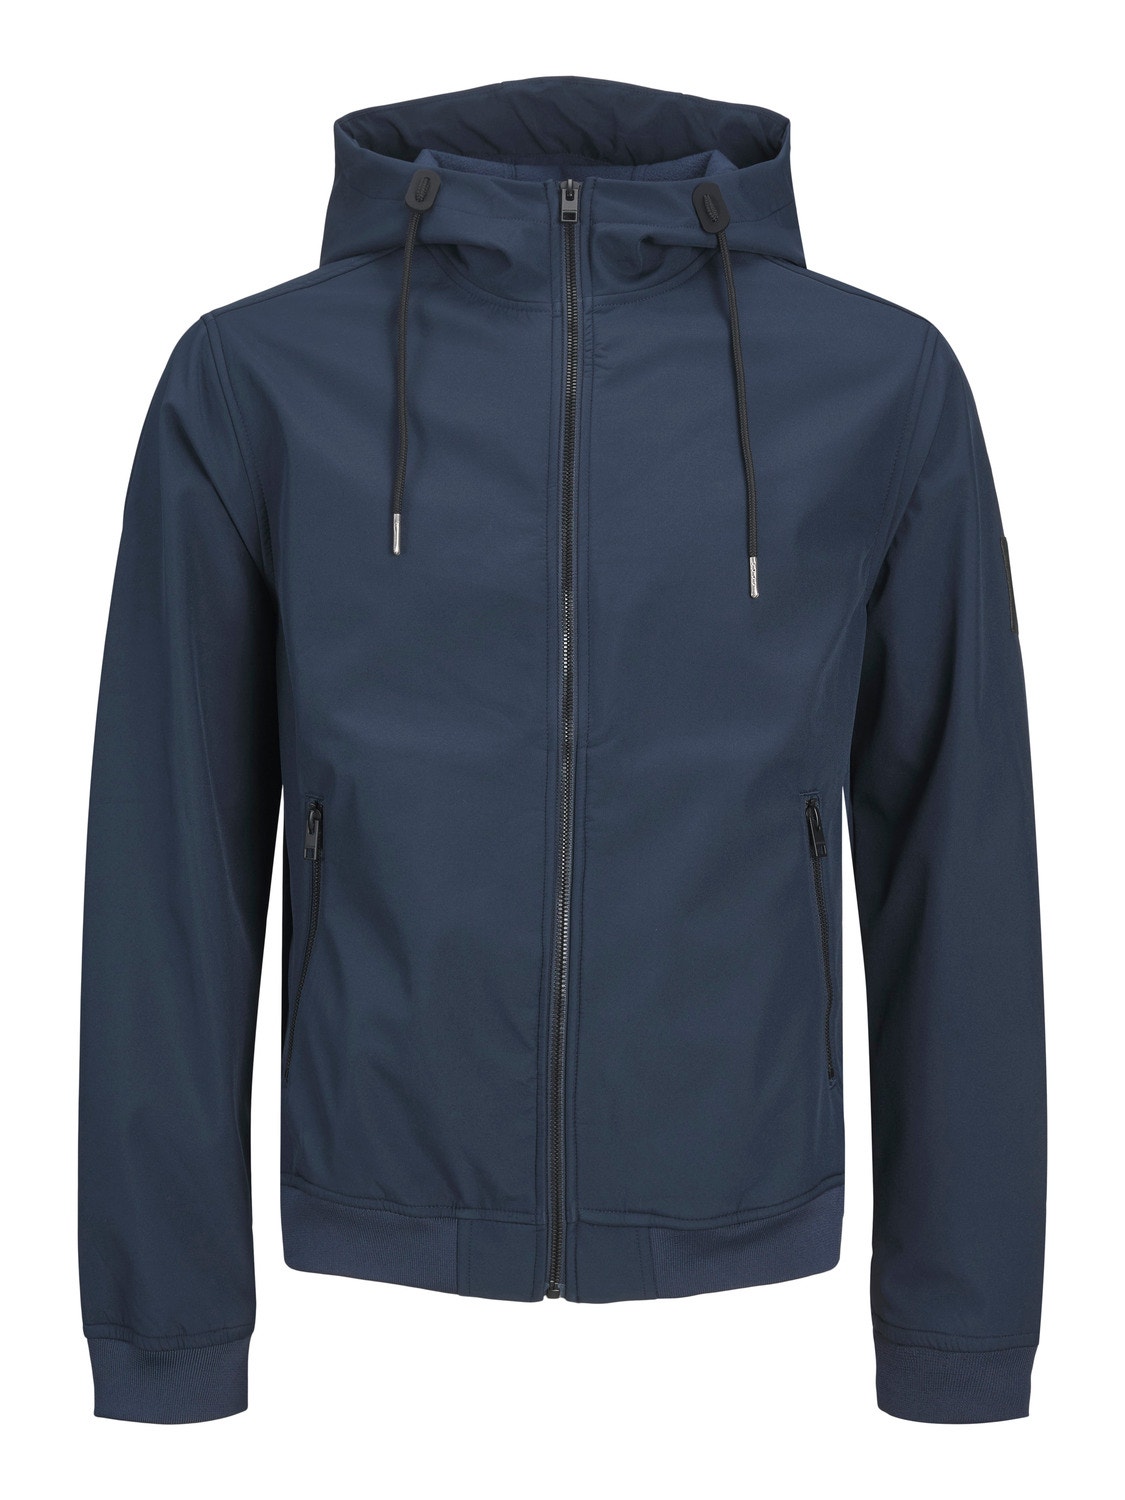 Jack & Jones Plus Size Softshell jacket -Navy Blazer - 12236331